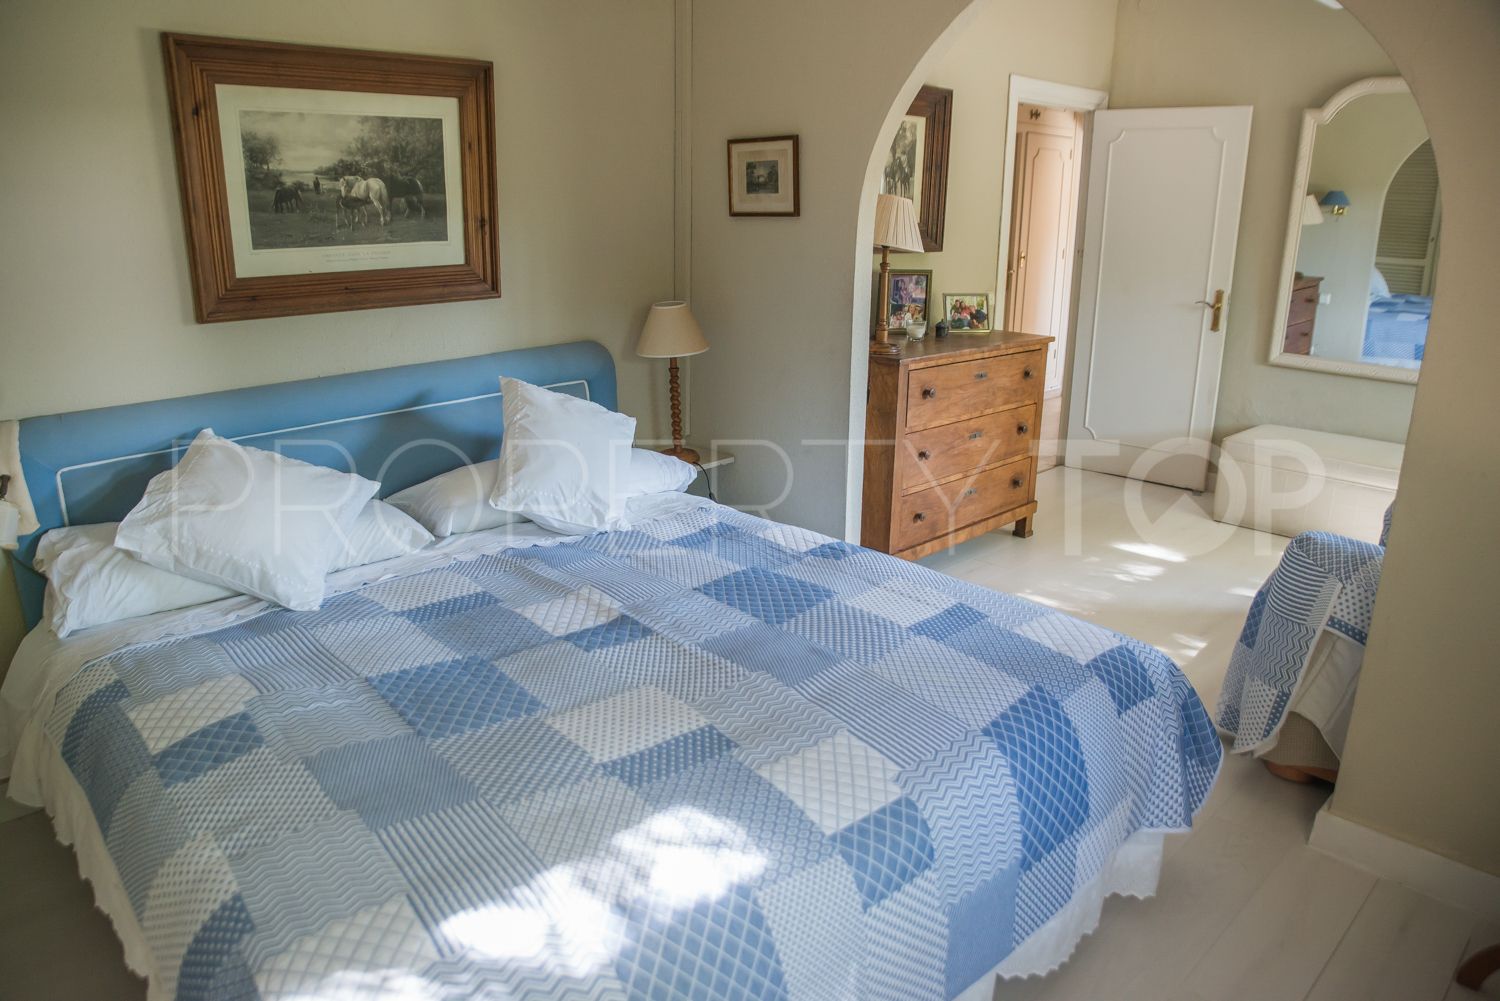 Sitio de Calahonda 7 bedrooms villa for sale